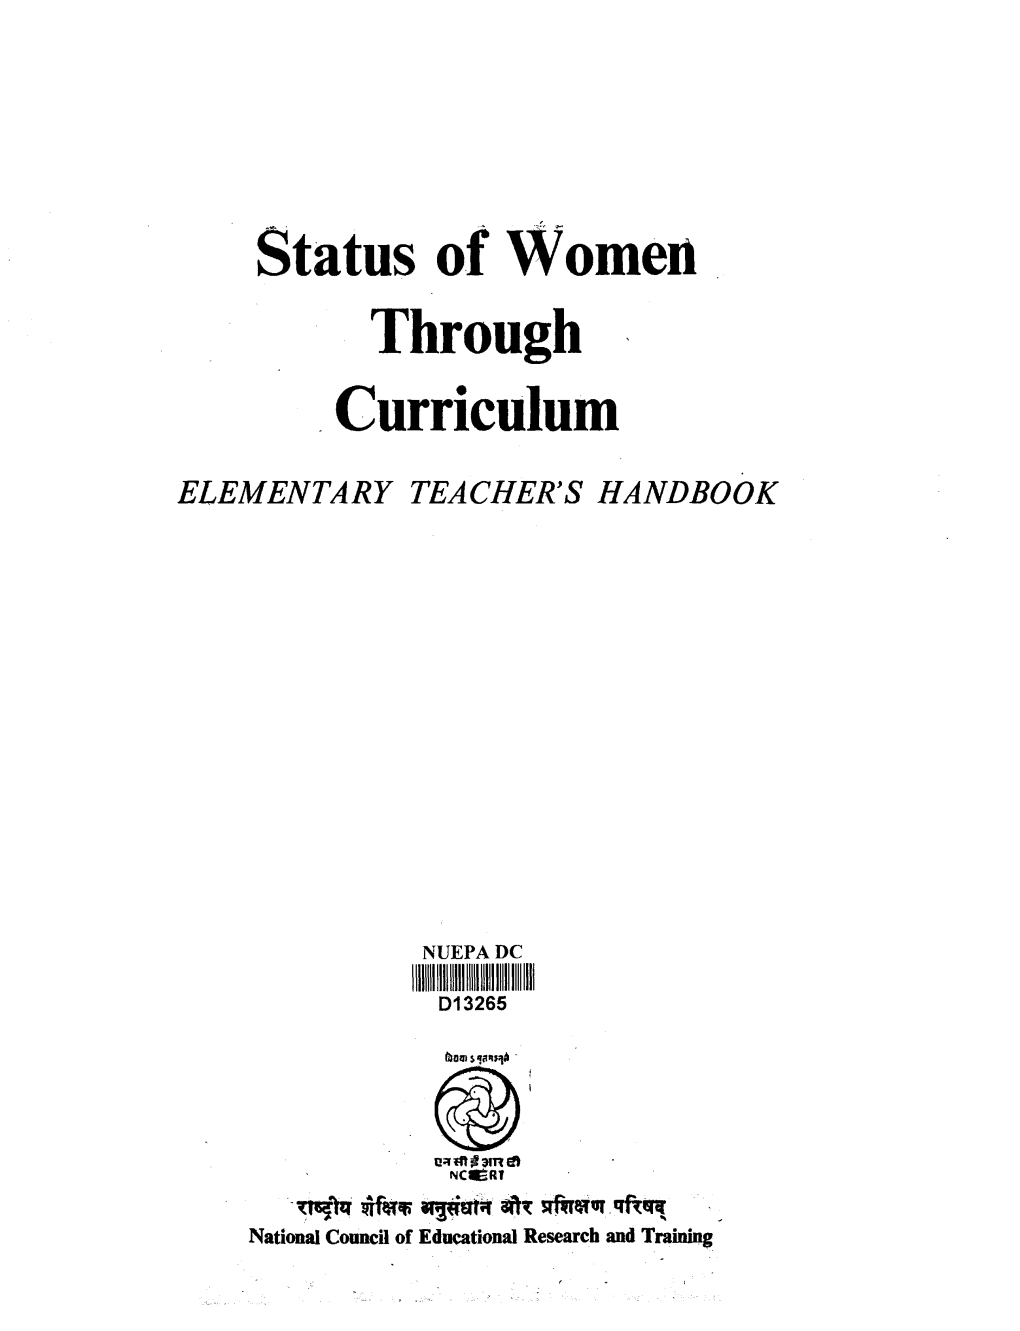 Status of Women Through Curriculum